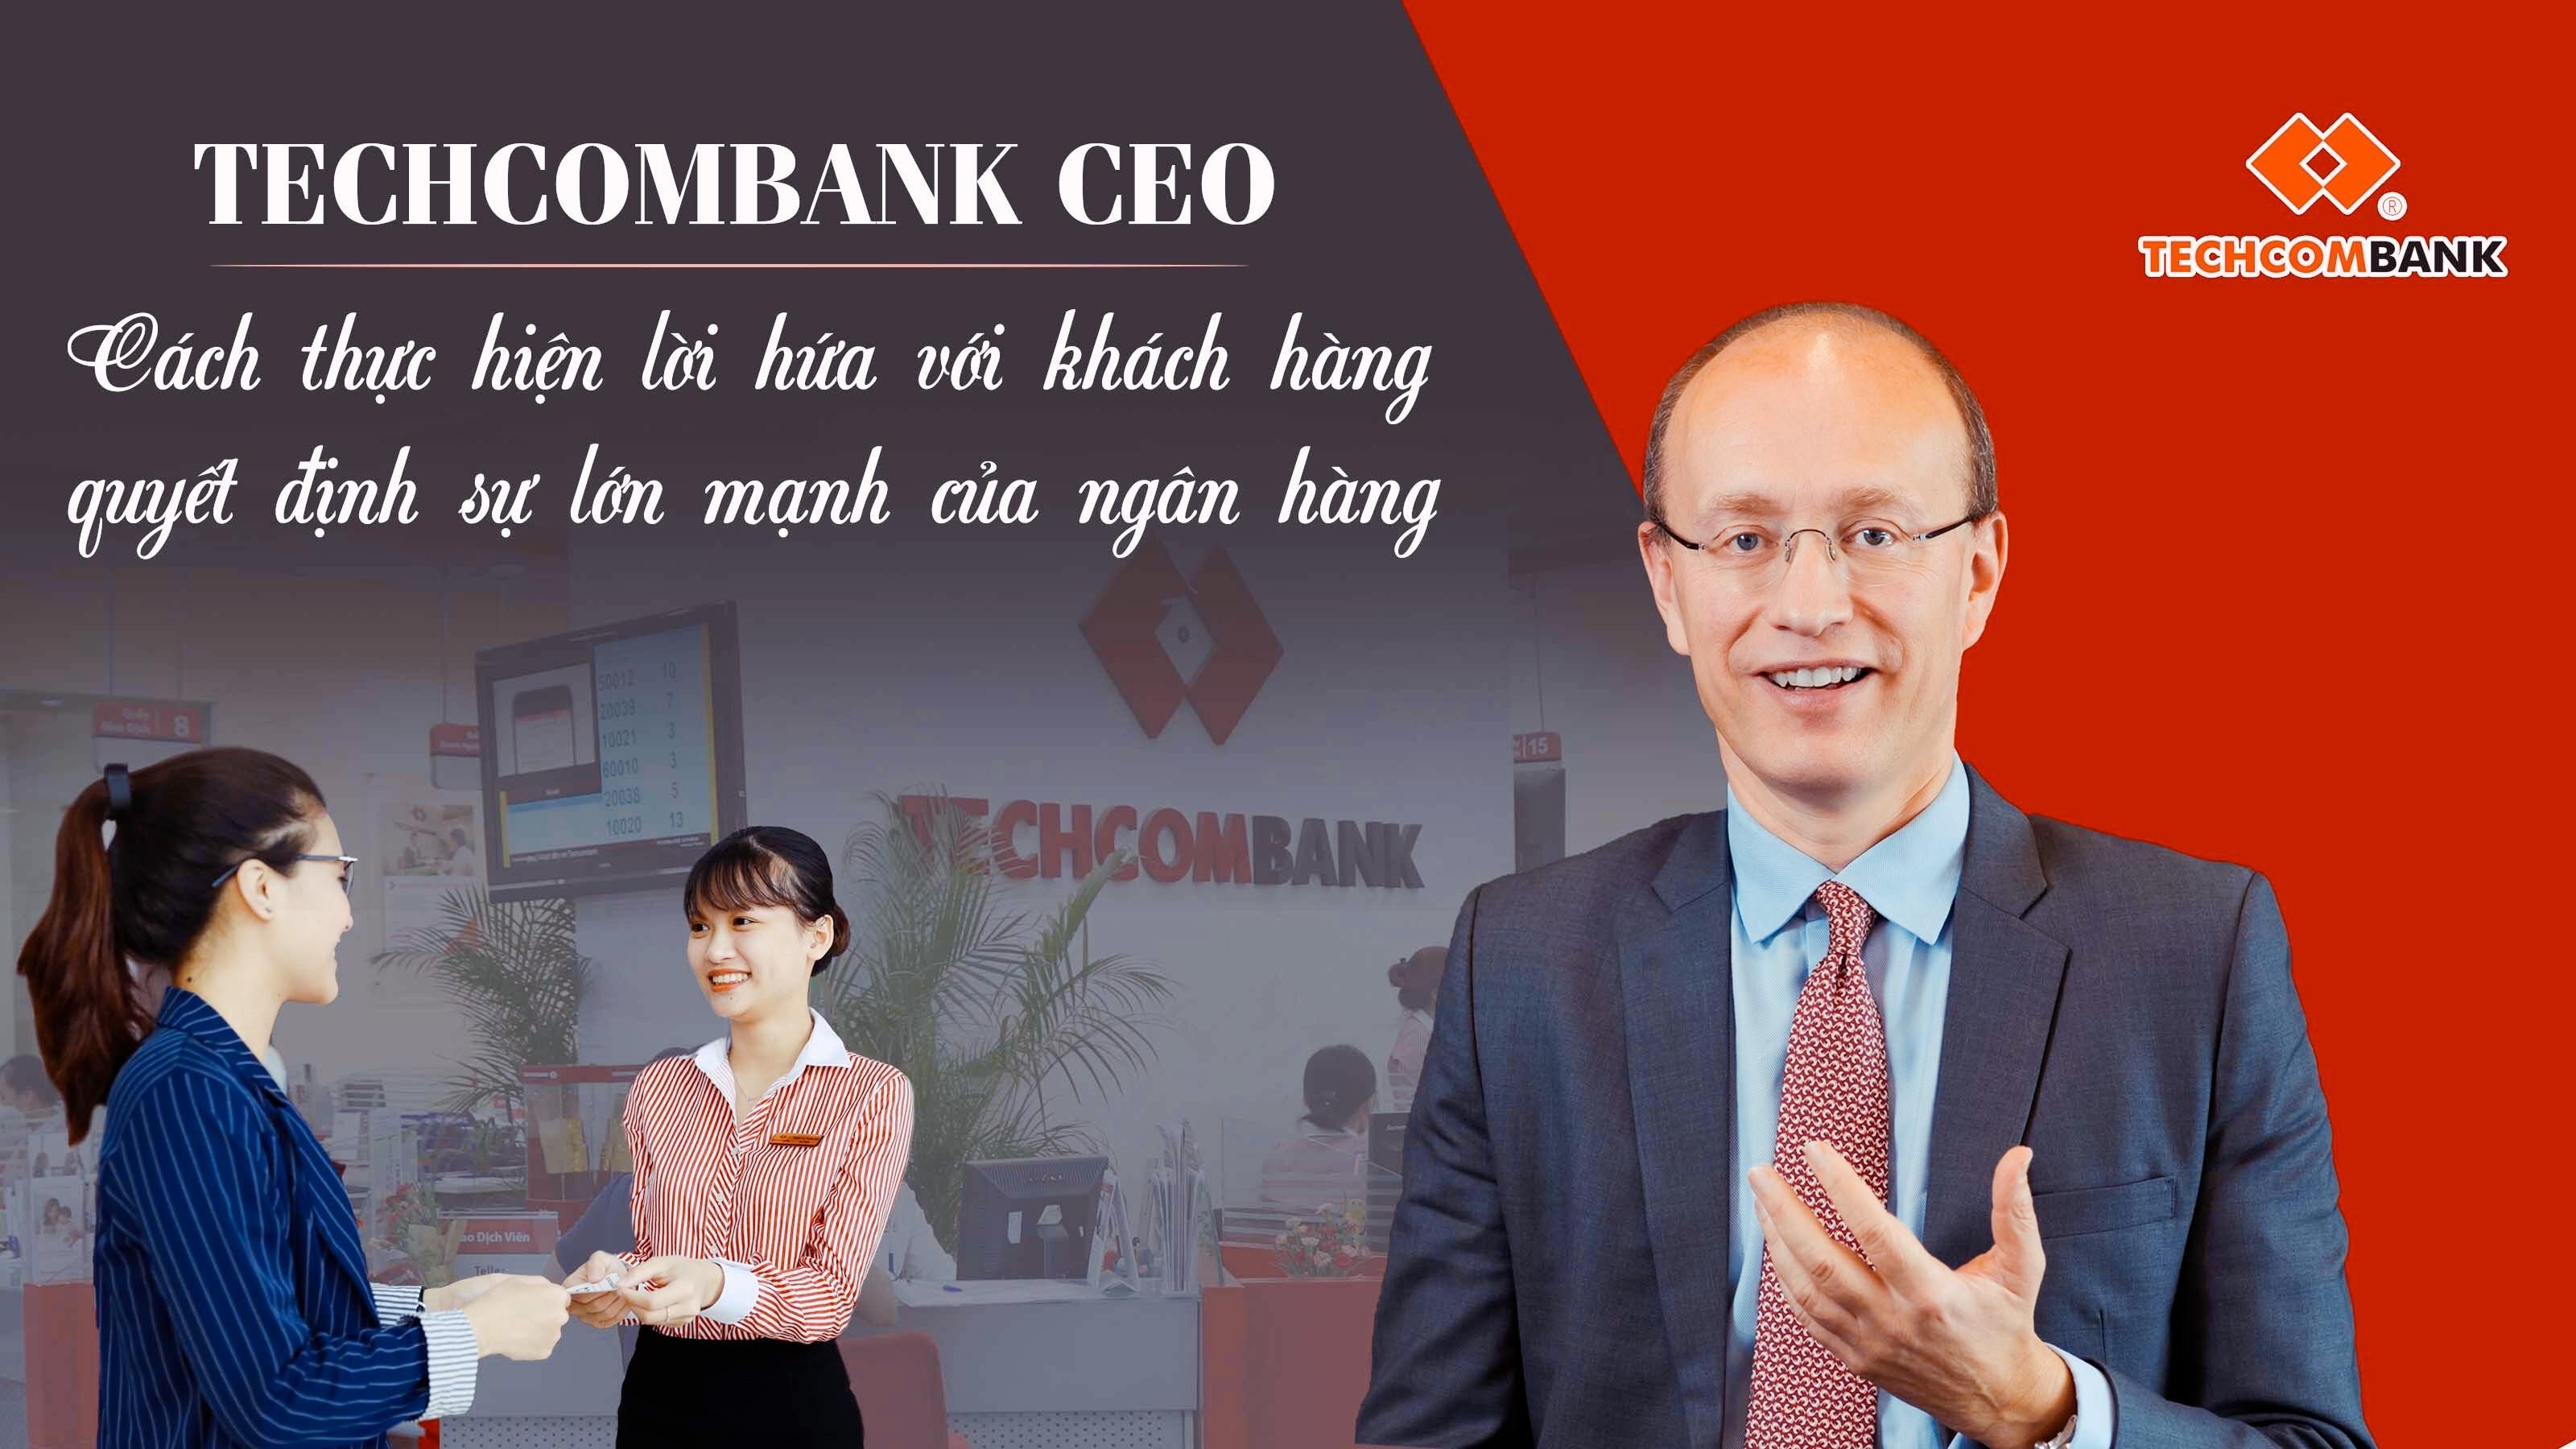 Techcombank CEO: Cách thực hiện lời hứa với khách hàng quyết định sự lớn mạnh của ngân hàng